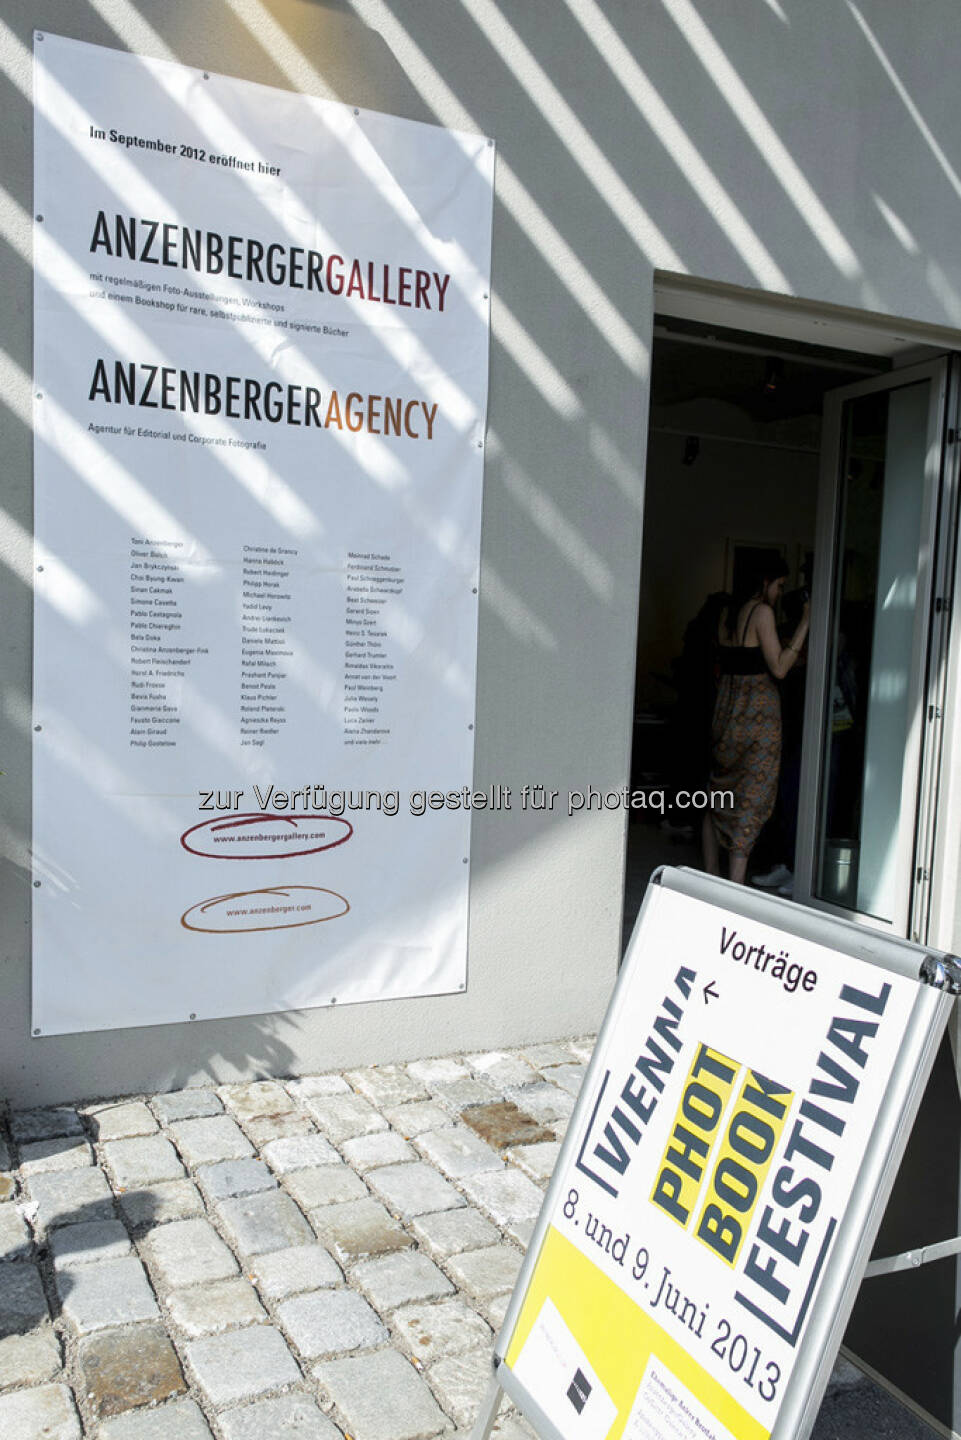 Anzenberger Gallery